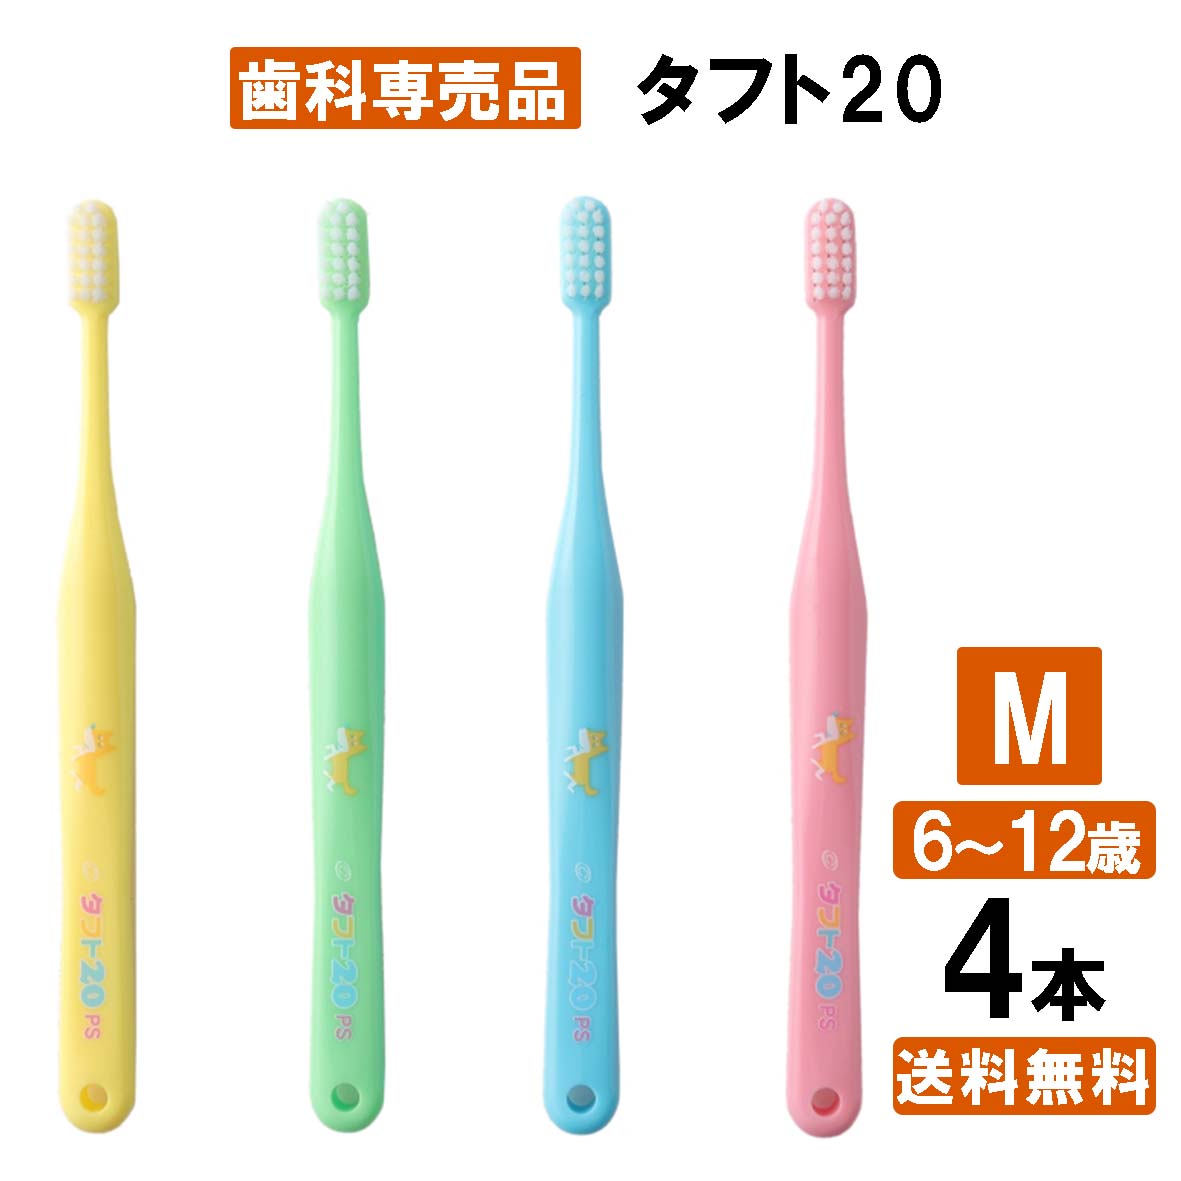 タフト20 M お試し4本入り 歯ブラシ アソート 子供 子ども 歯医者さん 歯科専用 オーラル 大容量 みがきやすい 日本製